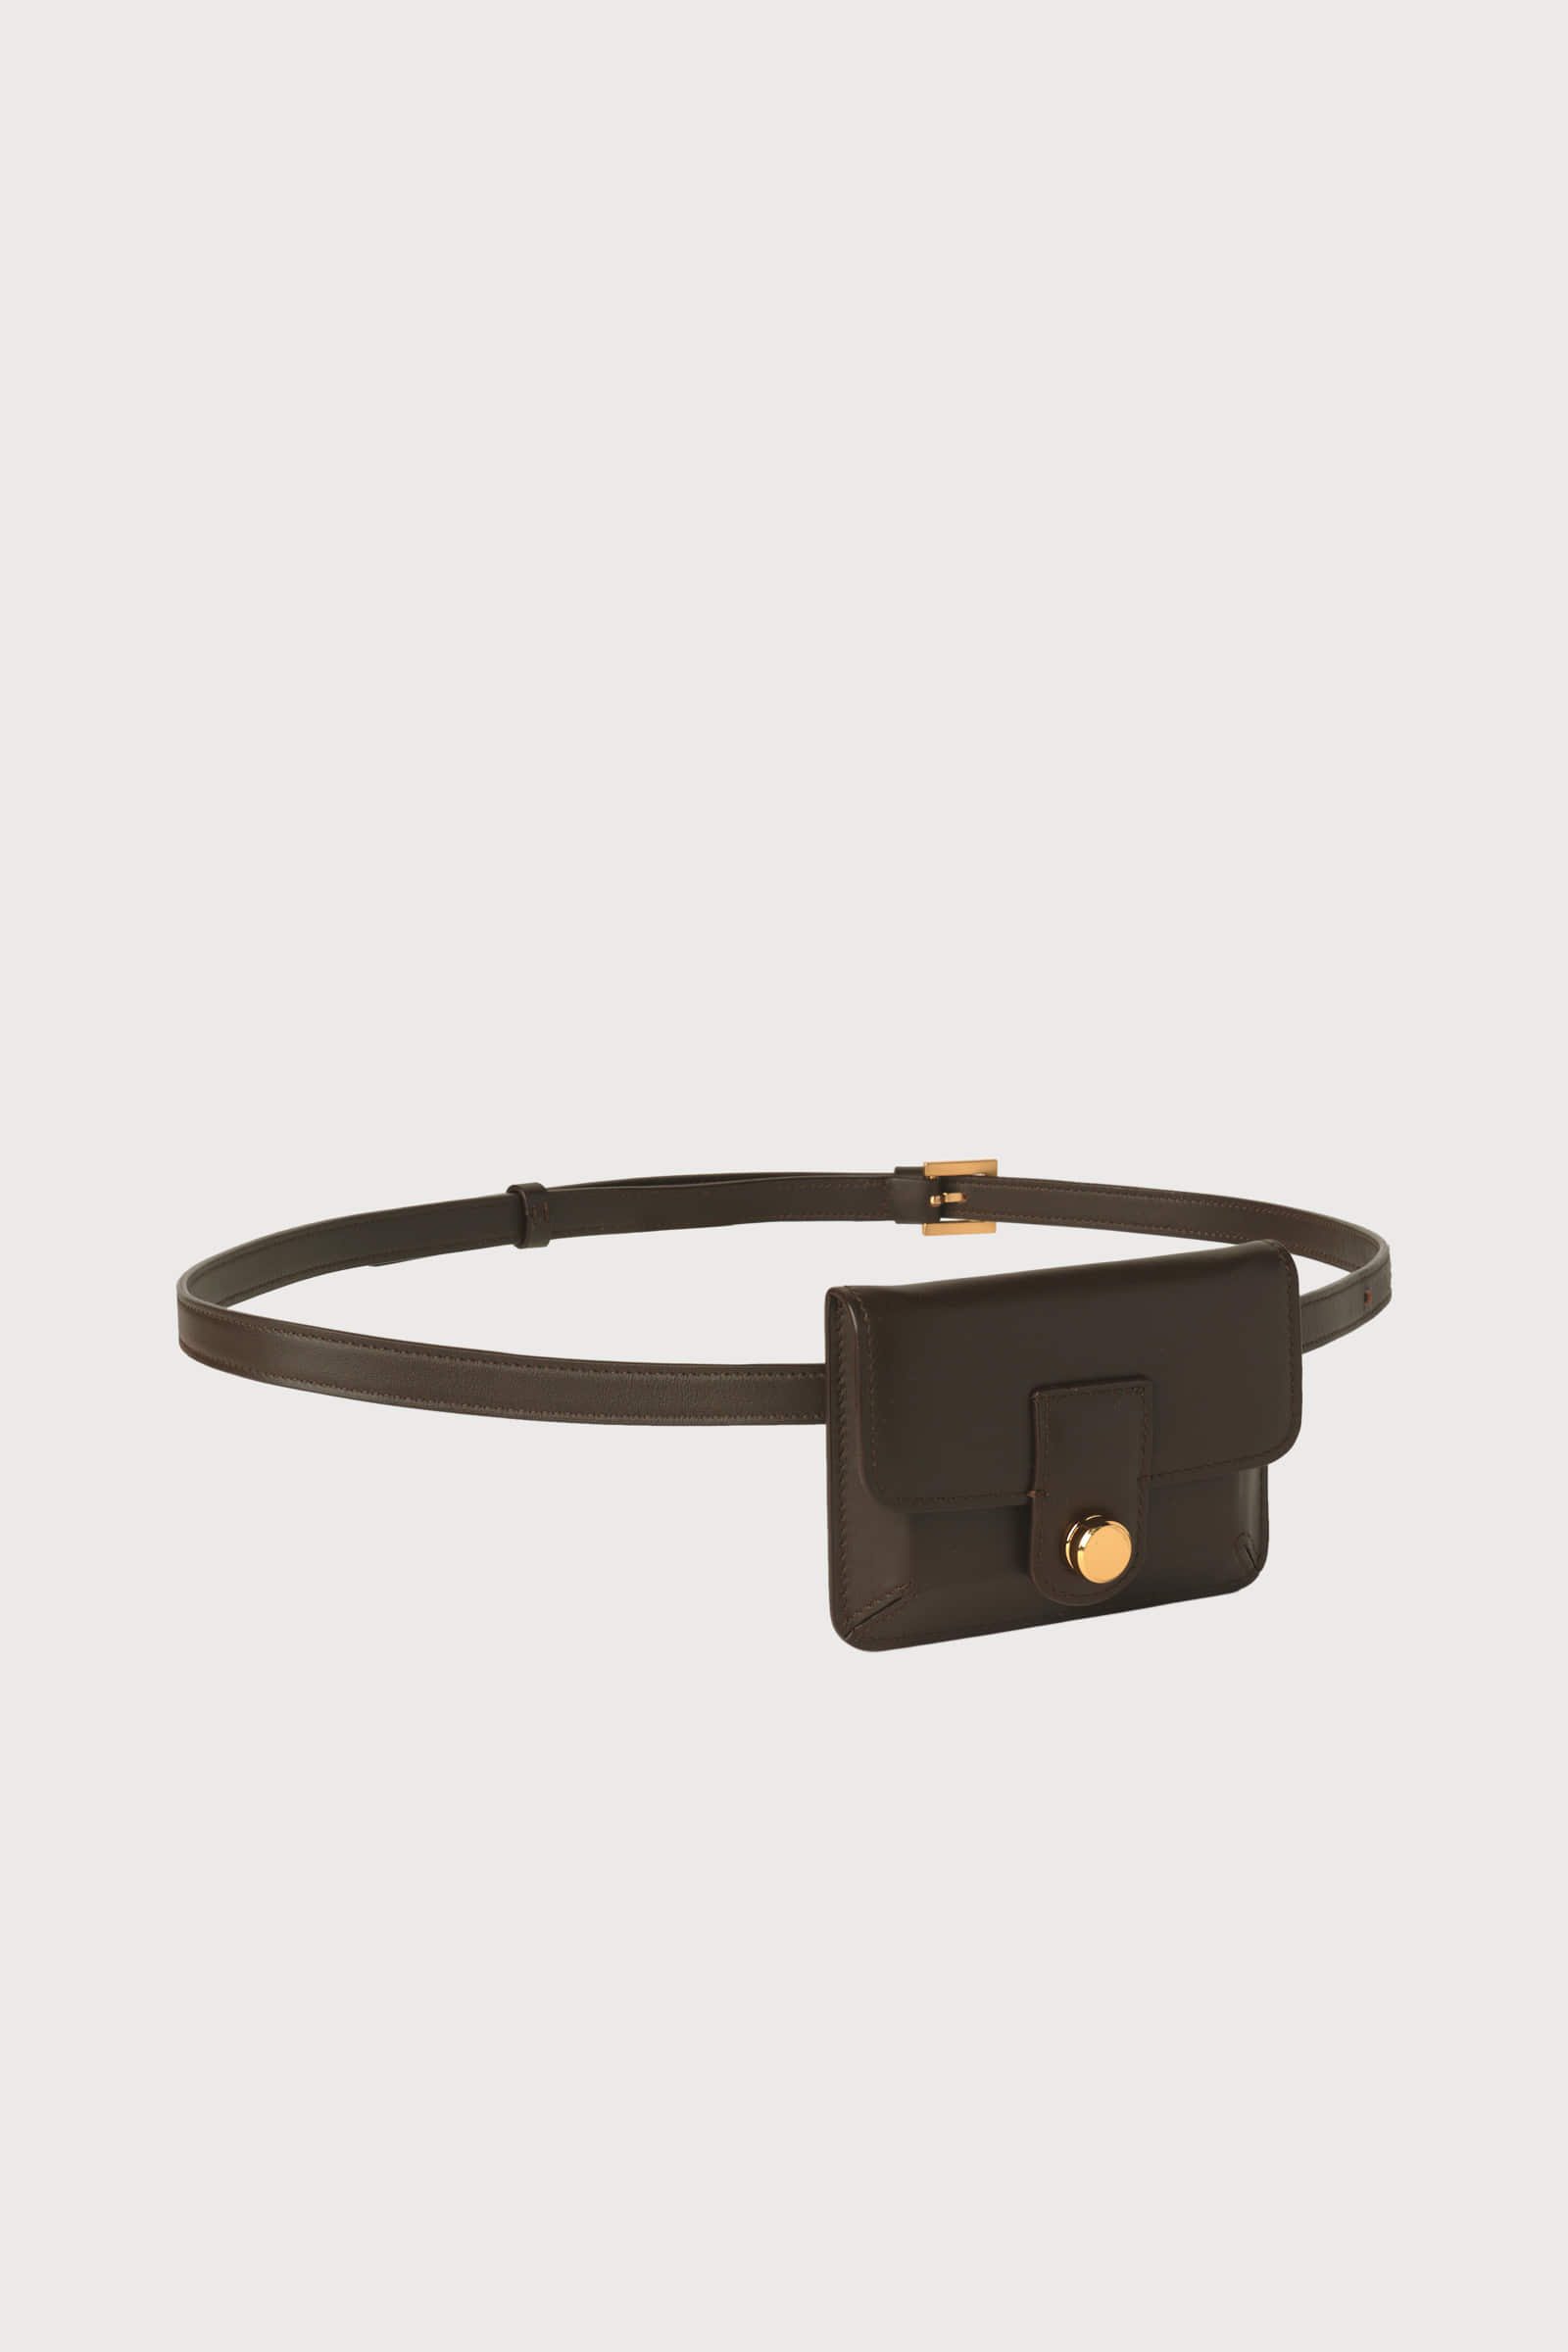 Part.4 Mini belt bag (brown)